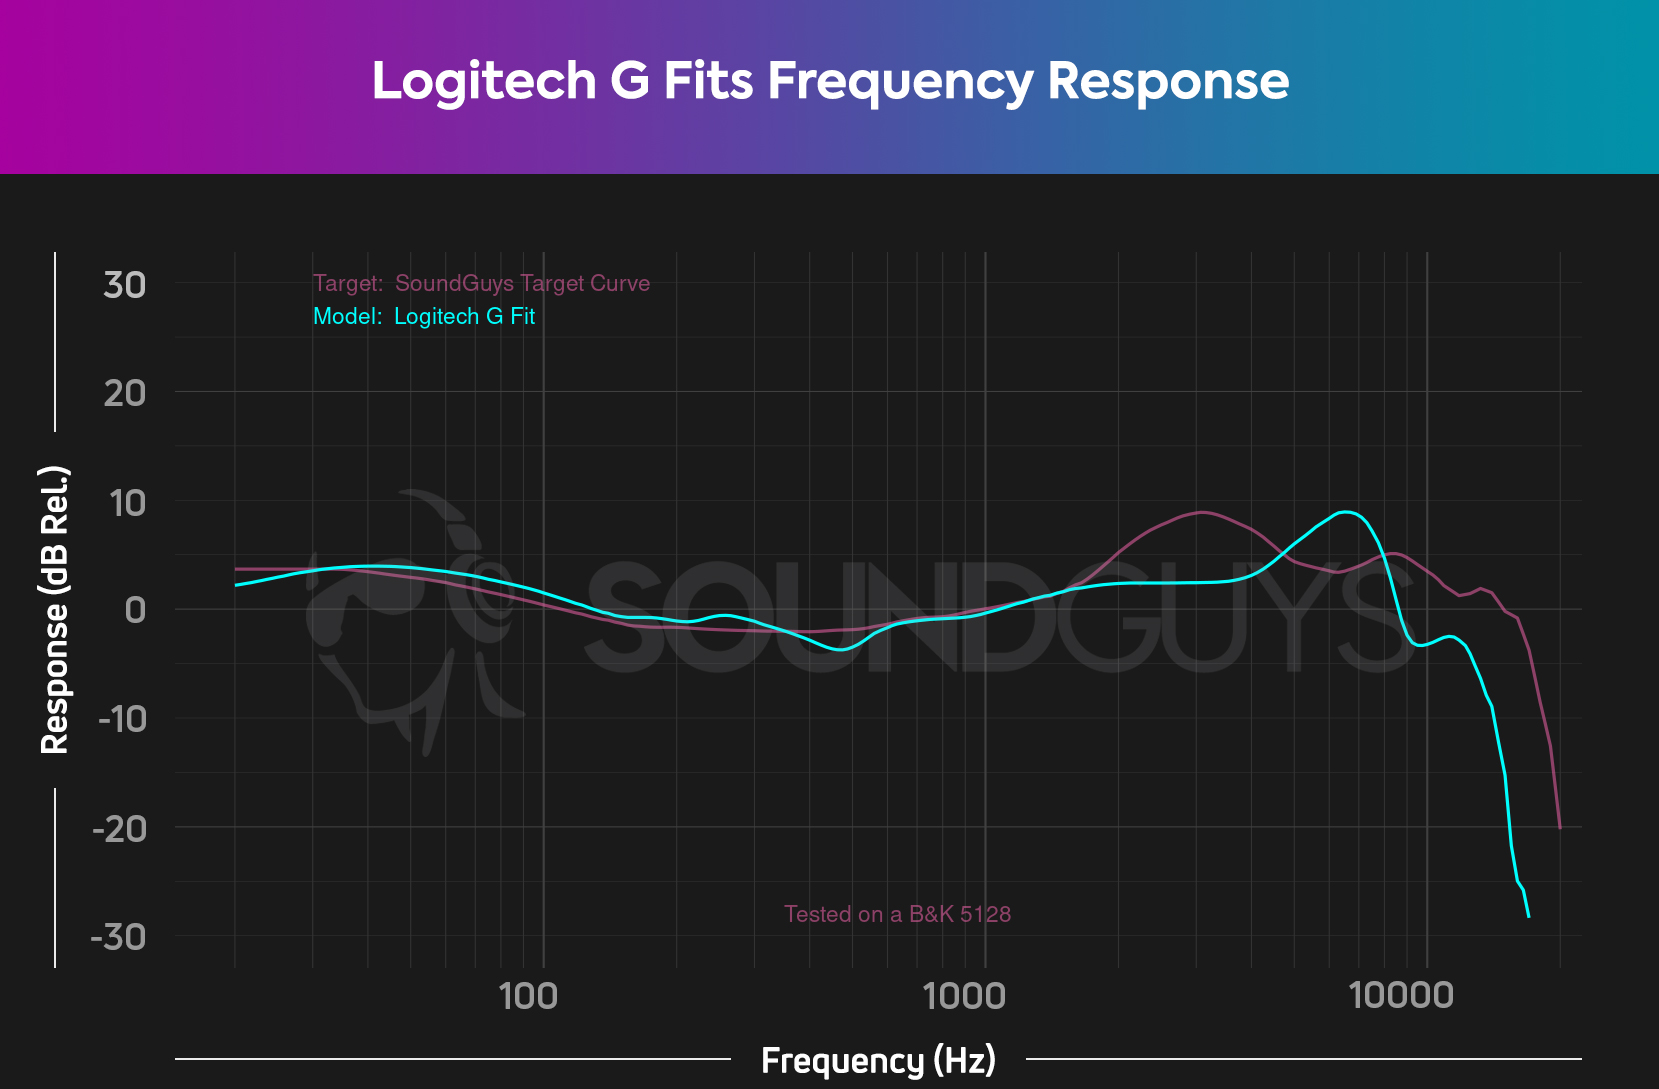 Ένα διάγραμμα απόκρισης συχνότητας για το Logitech G ταιριάζει με τα ακουστικά, το οποίο δείχνει μια αρκετά στενή έξοδο στην καμπύλη μας στο σπίτι μας